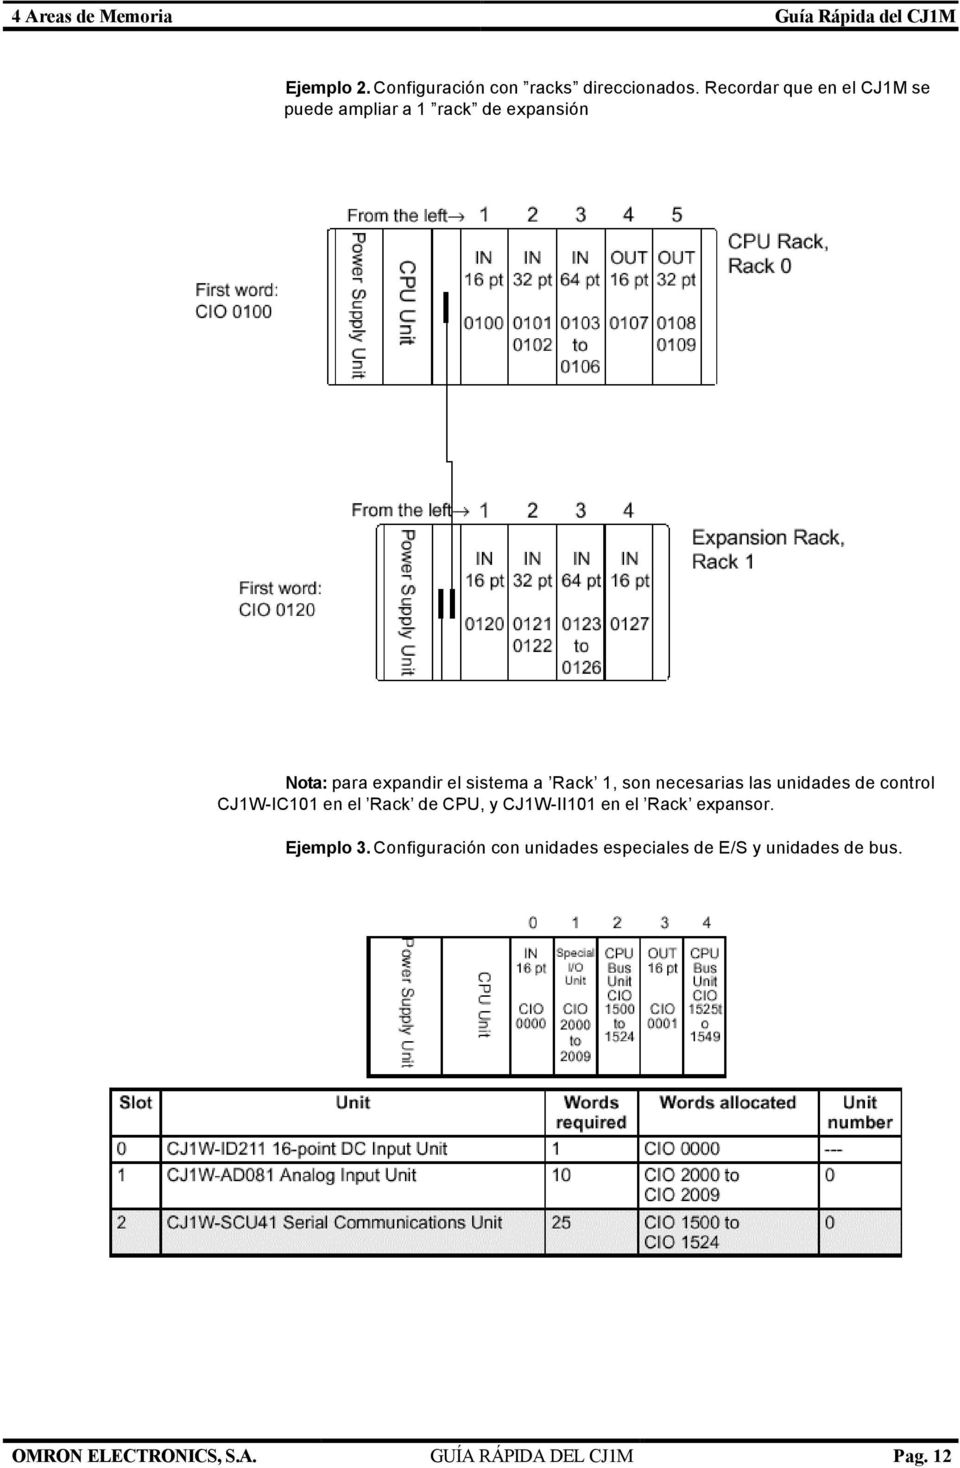 son necesarias las unidades de control CJ1W-IC101 en el Rack de CPU, y CJ1W-II101 en el Rack expansor.